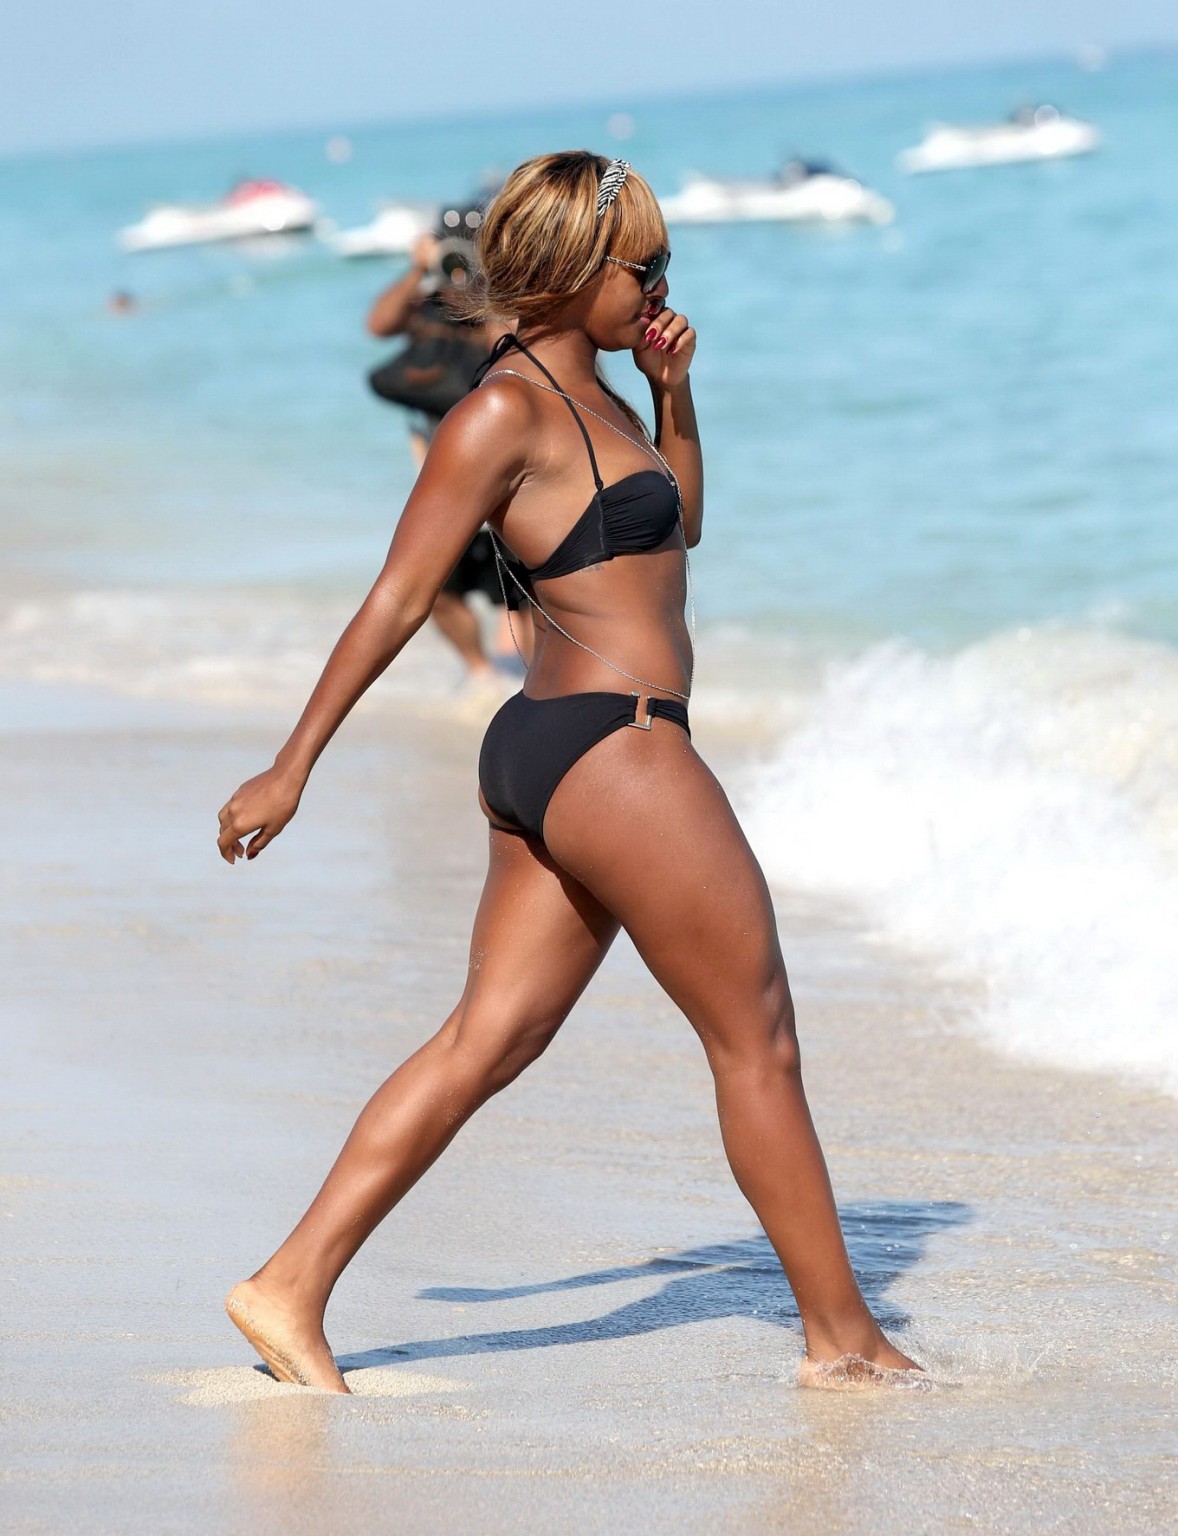 Alexandra burke che mostra il suo corpo del bikini su una spiaggia in miami
 #75244127